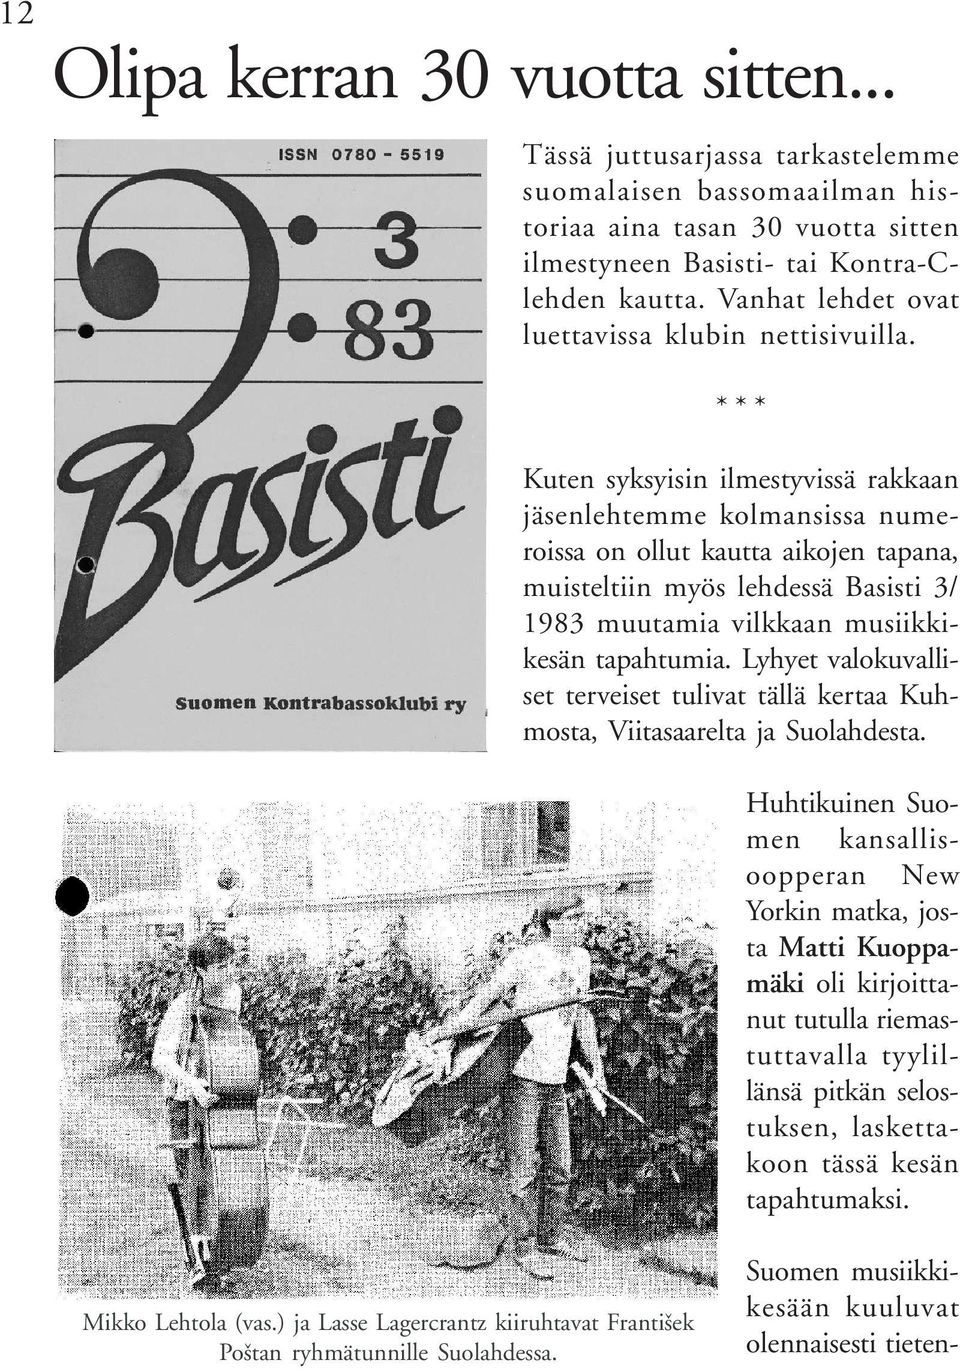 * * * Kuten syksyisin ilmestyvissä rakkaan jäsenlehtemme kolmansissa numeroissa on ollut kautta aikojen tapana, muisteltiin myös lehdessä Basisti 3/ 1983 muutamia vilkkaan musiikkikesän tapahtumia.